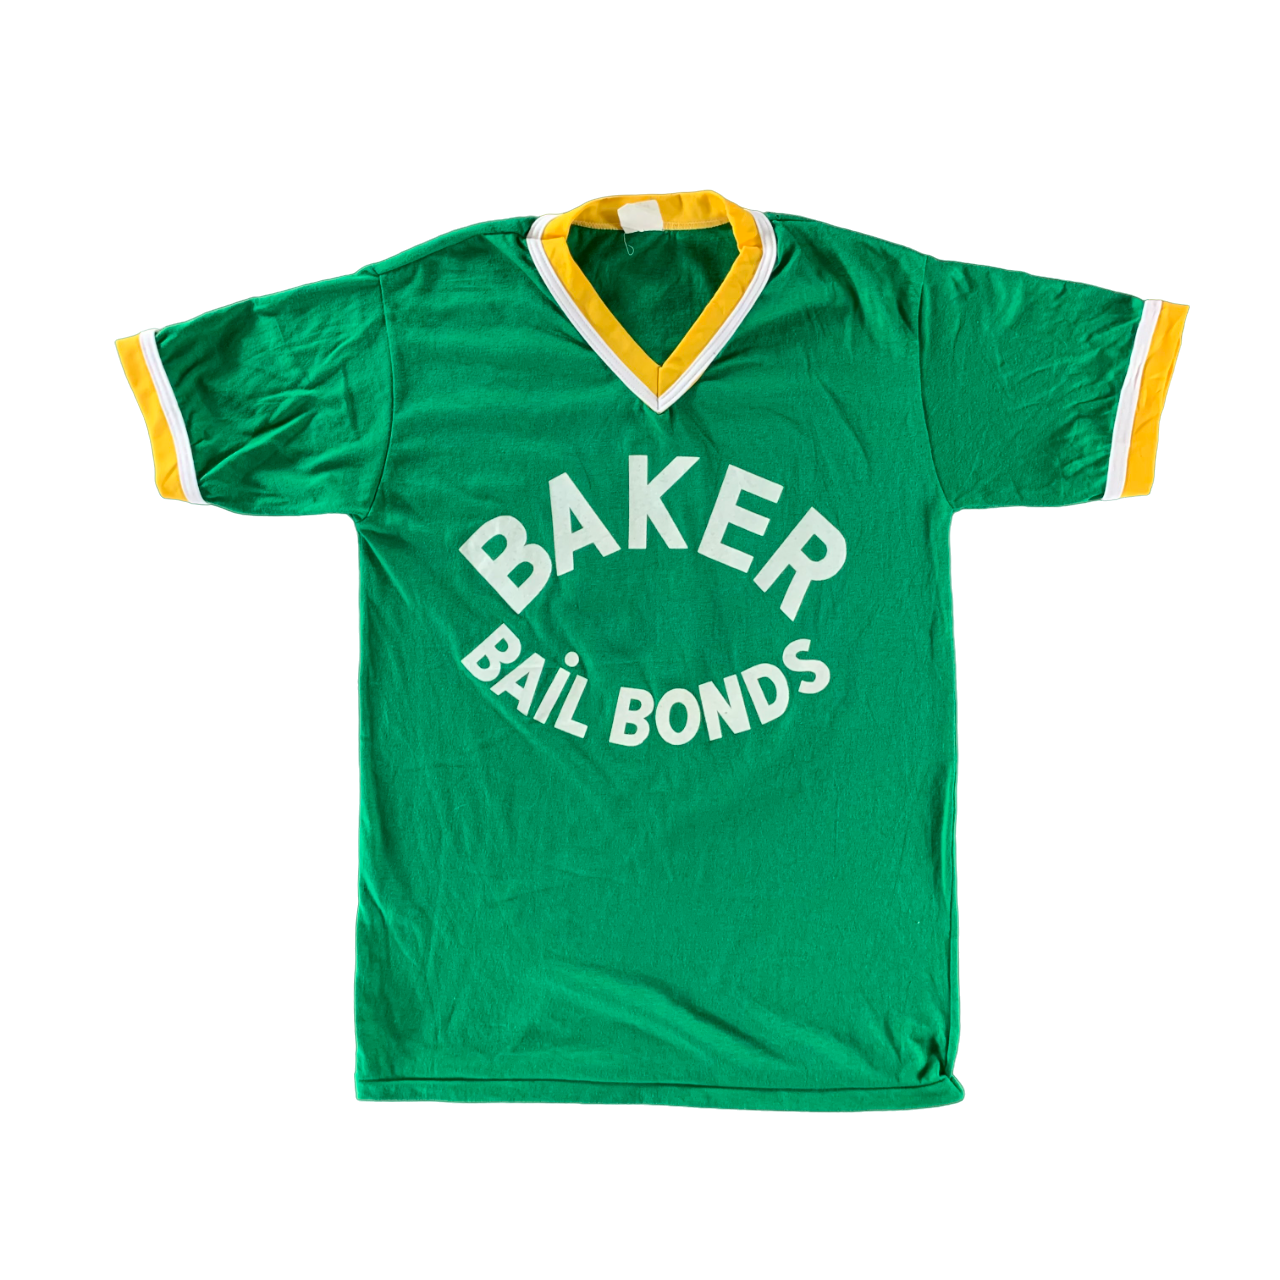 Vintage 1980s Bail Bonds T-shirt size Large